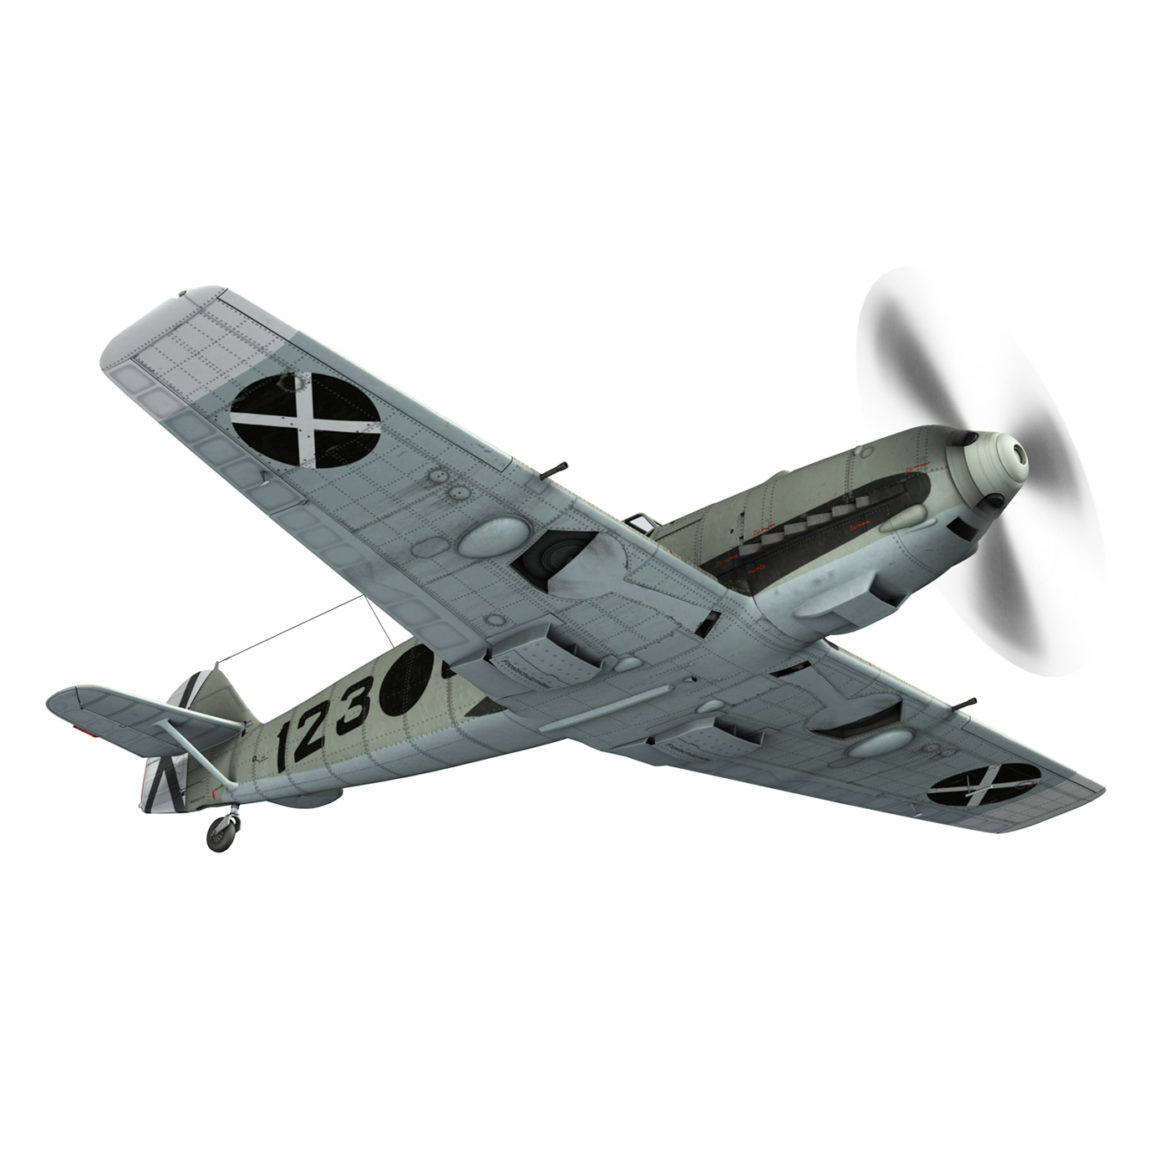  <a class="continue" href="https://www.flatpyramid.com/3d-models/vehicles-3d-models/aircraft/messerschmitt-bf-109-e-6-123/">Continue Reading<span> Messerschmitt – BF-109 E – 6-123</span></a>